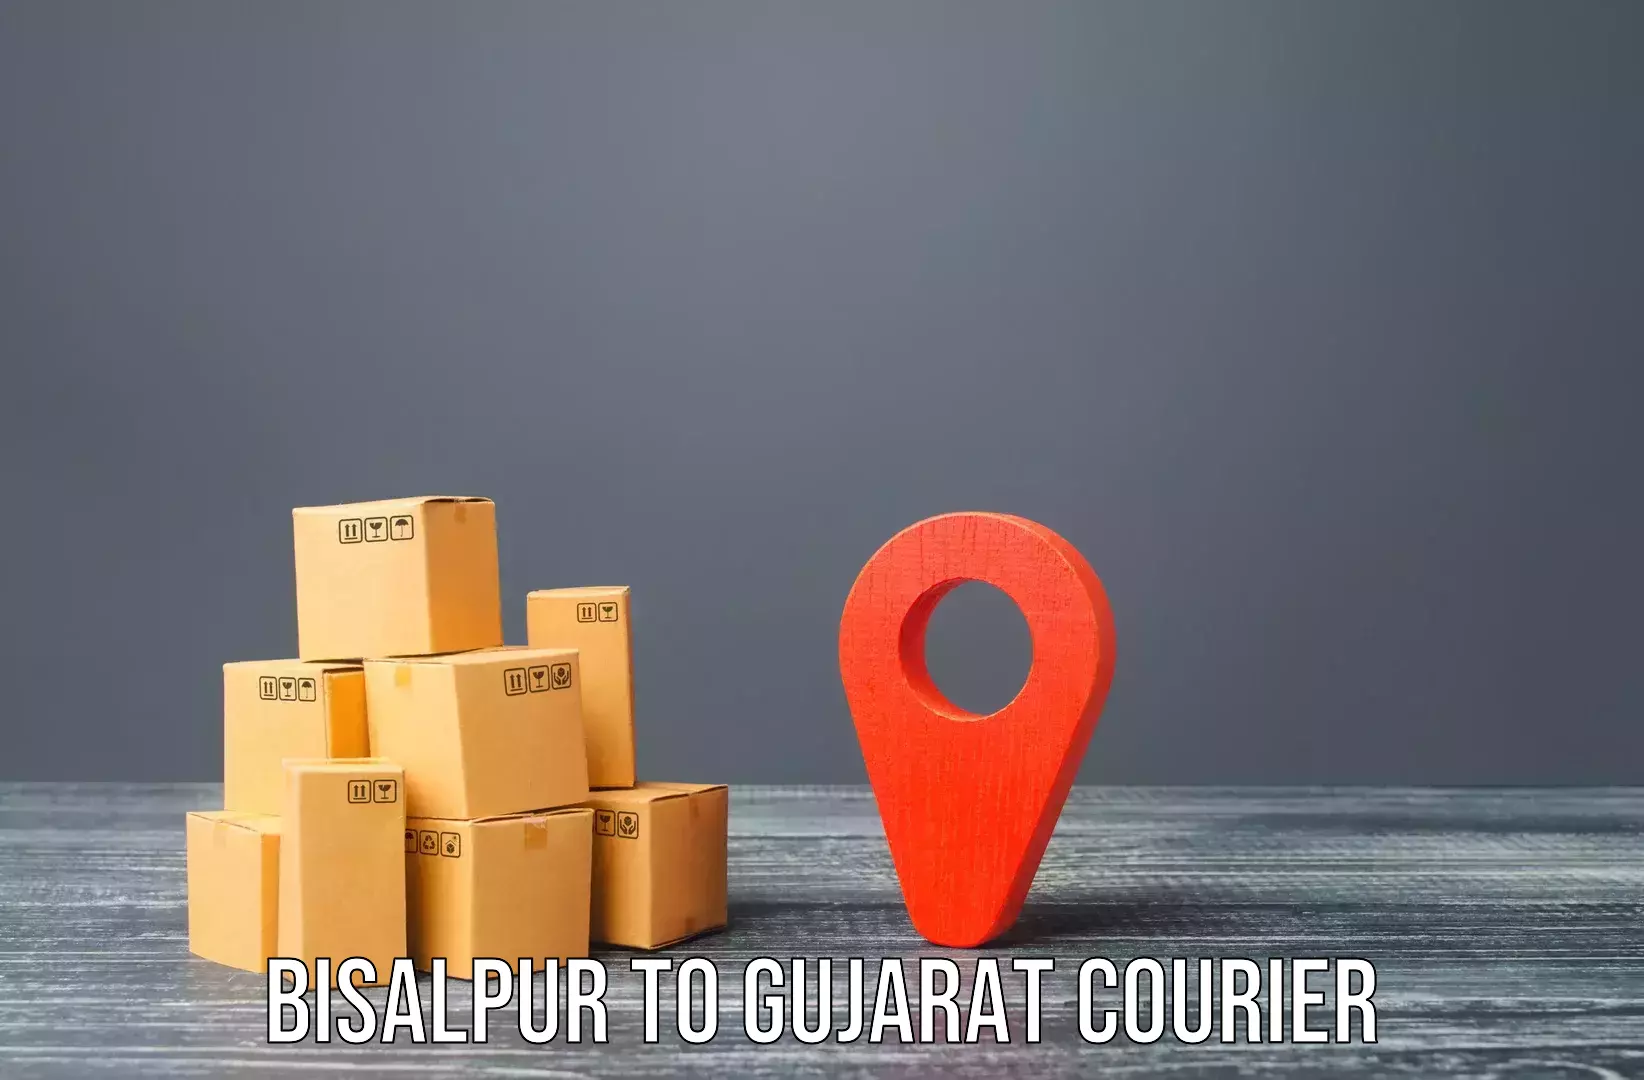 Furniture transport experts Bisalpur to Vyara